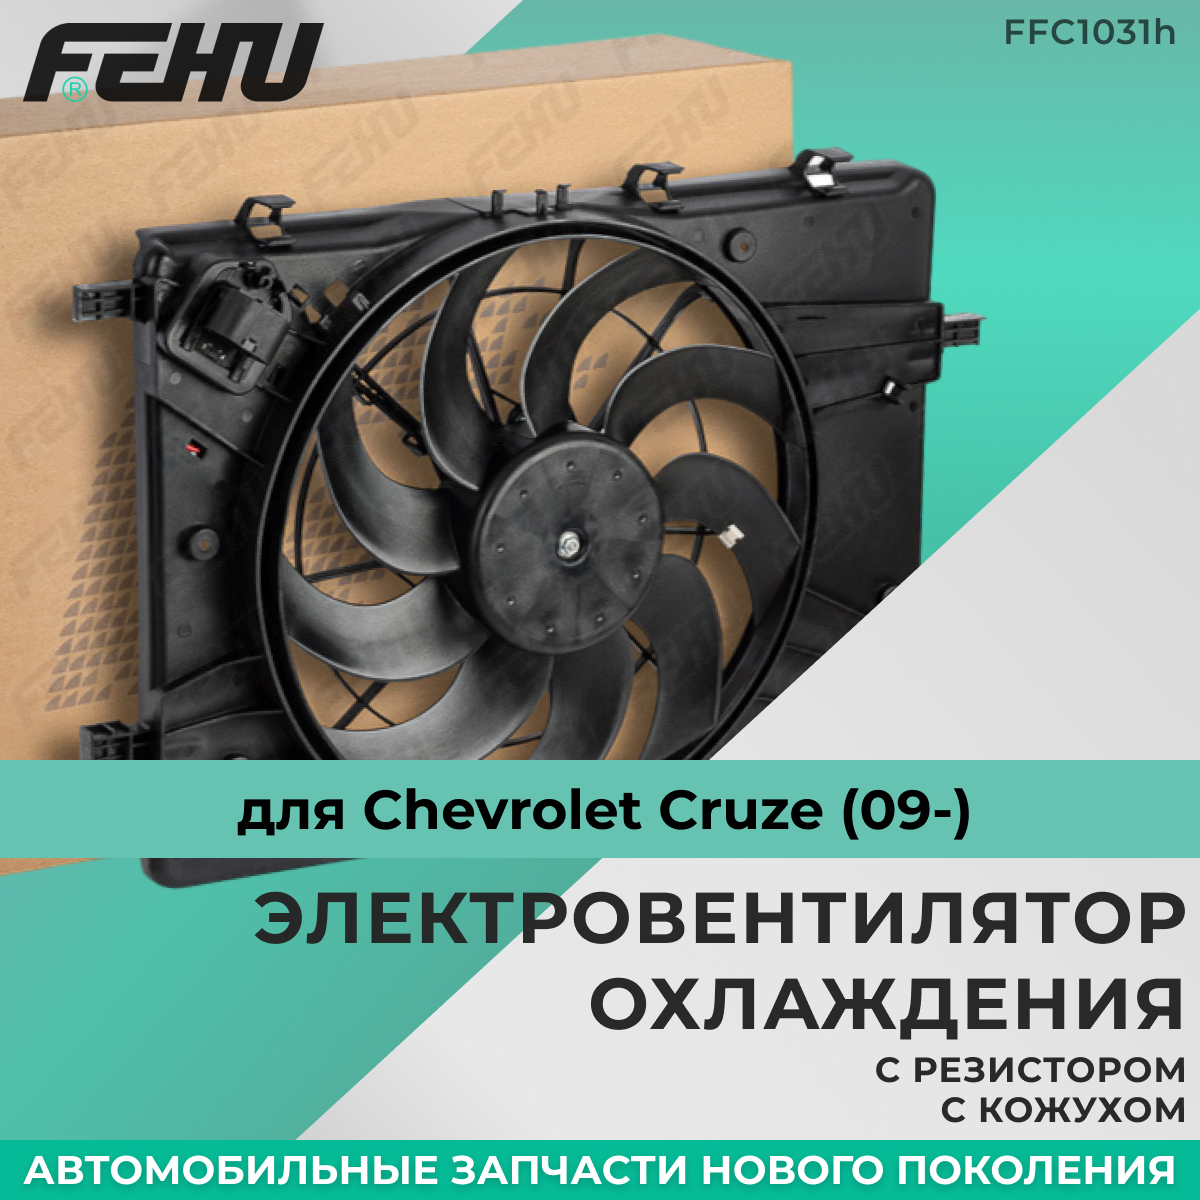 Электровентилятор охлаждения FEHU (феху) с кожухом с резистором Chevrolet Cruze (09-) арт.